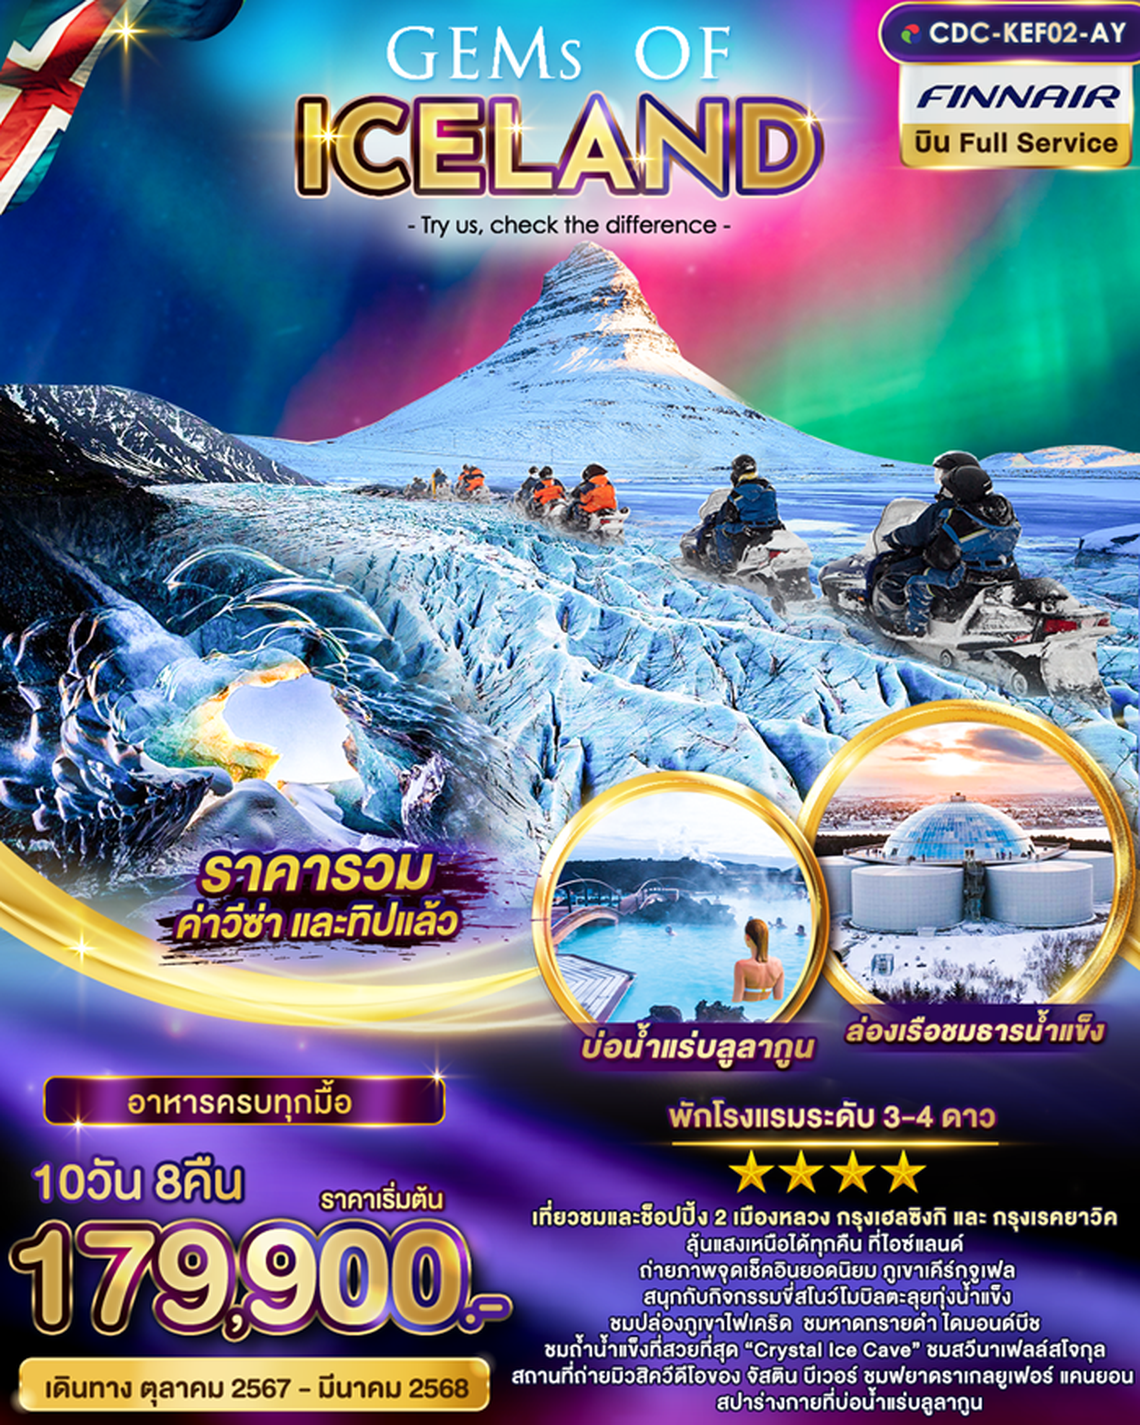 ทัวร์ไอซ์แลนด์ Gems of Iceland 10 วัน 8 คืน